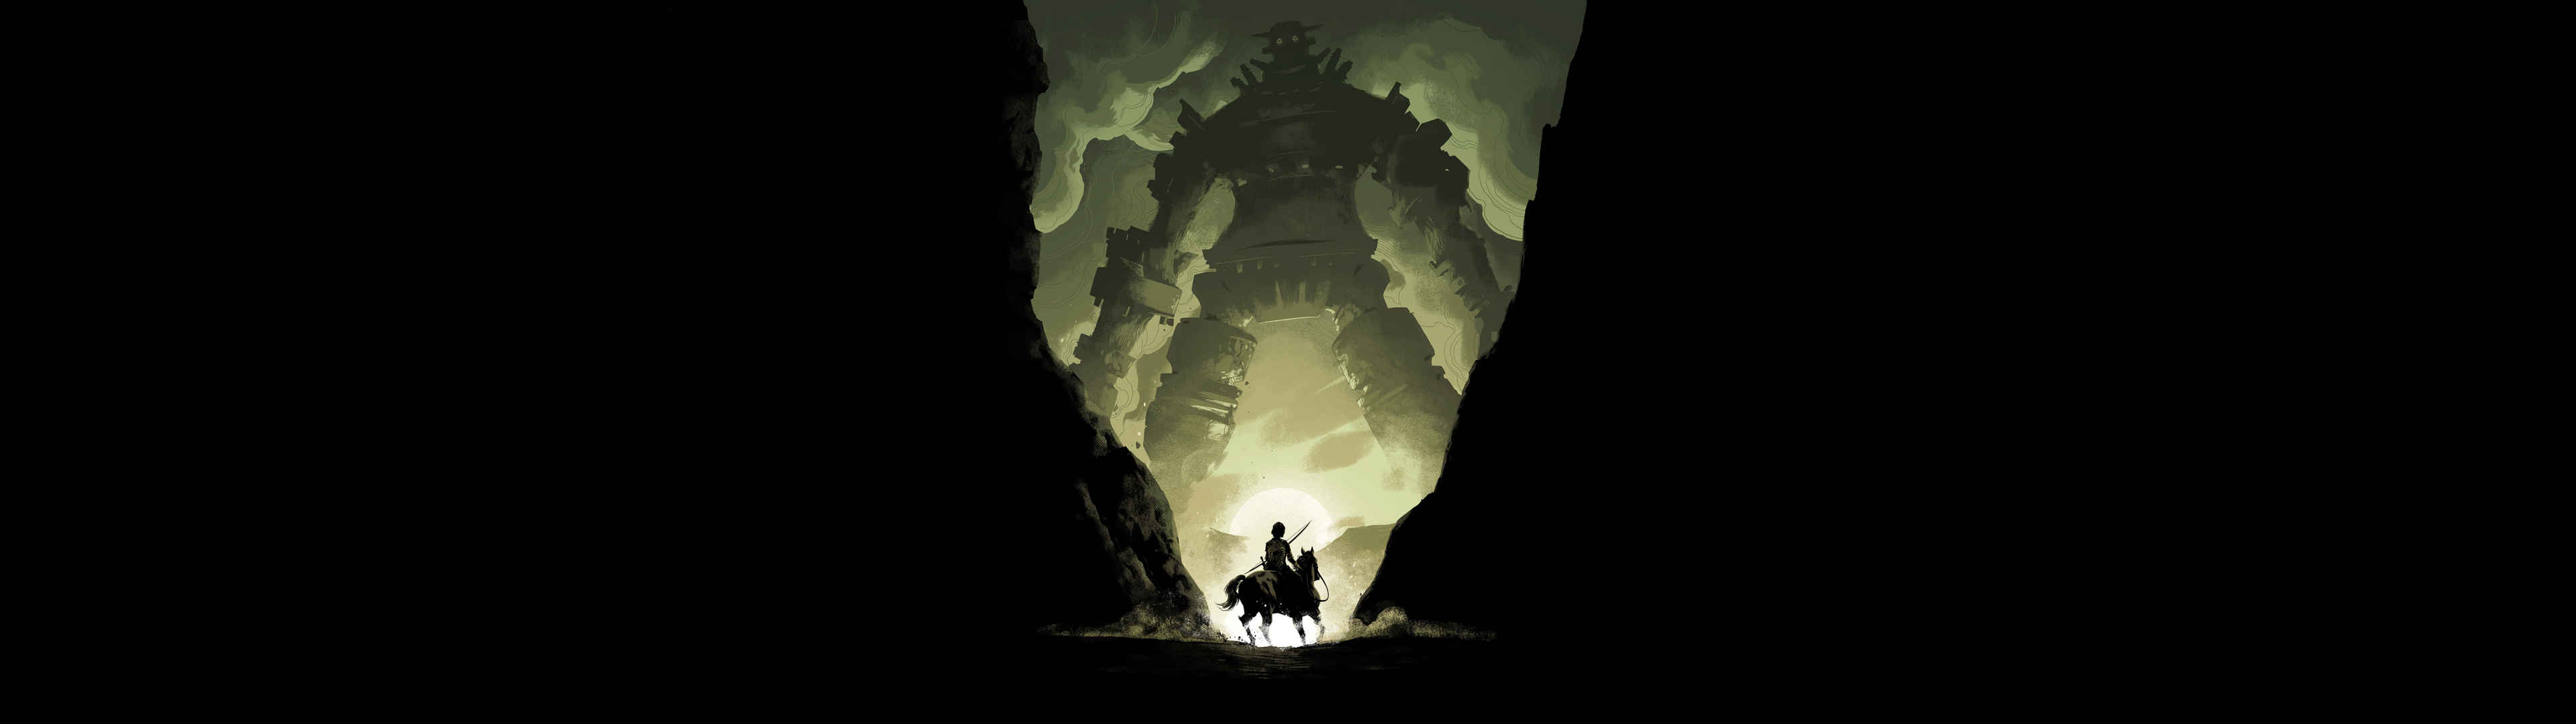 《旺达与巨像 Shadow of the Colossus》5120x1440游戏图片